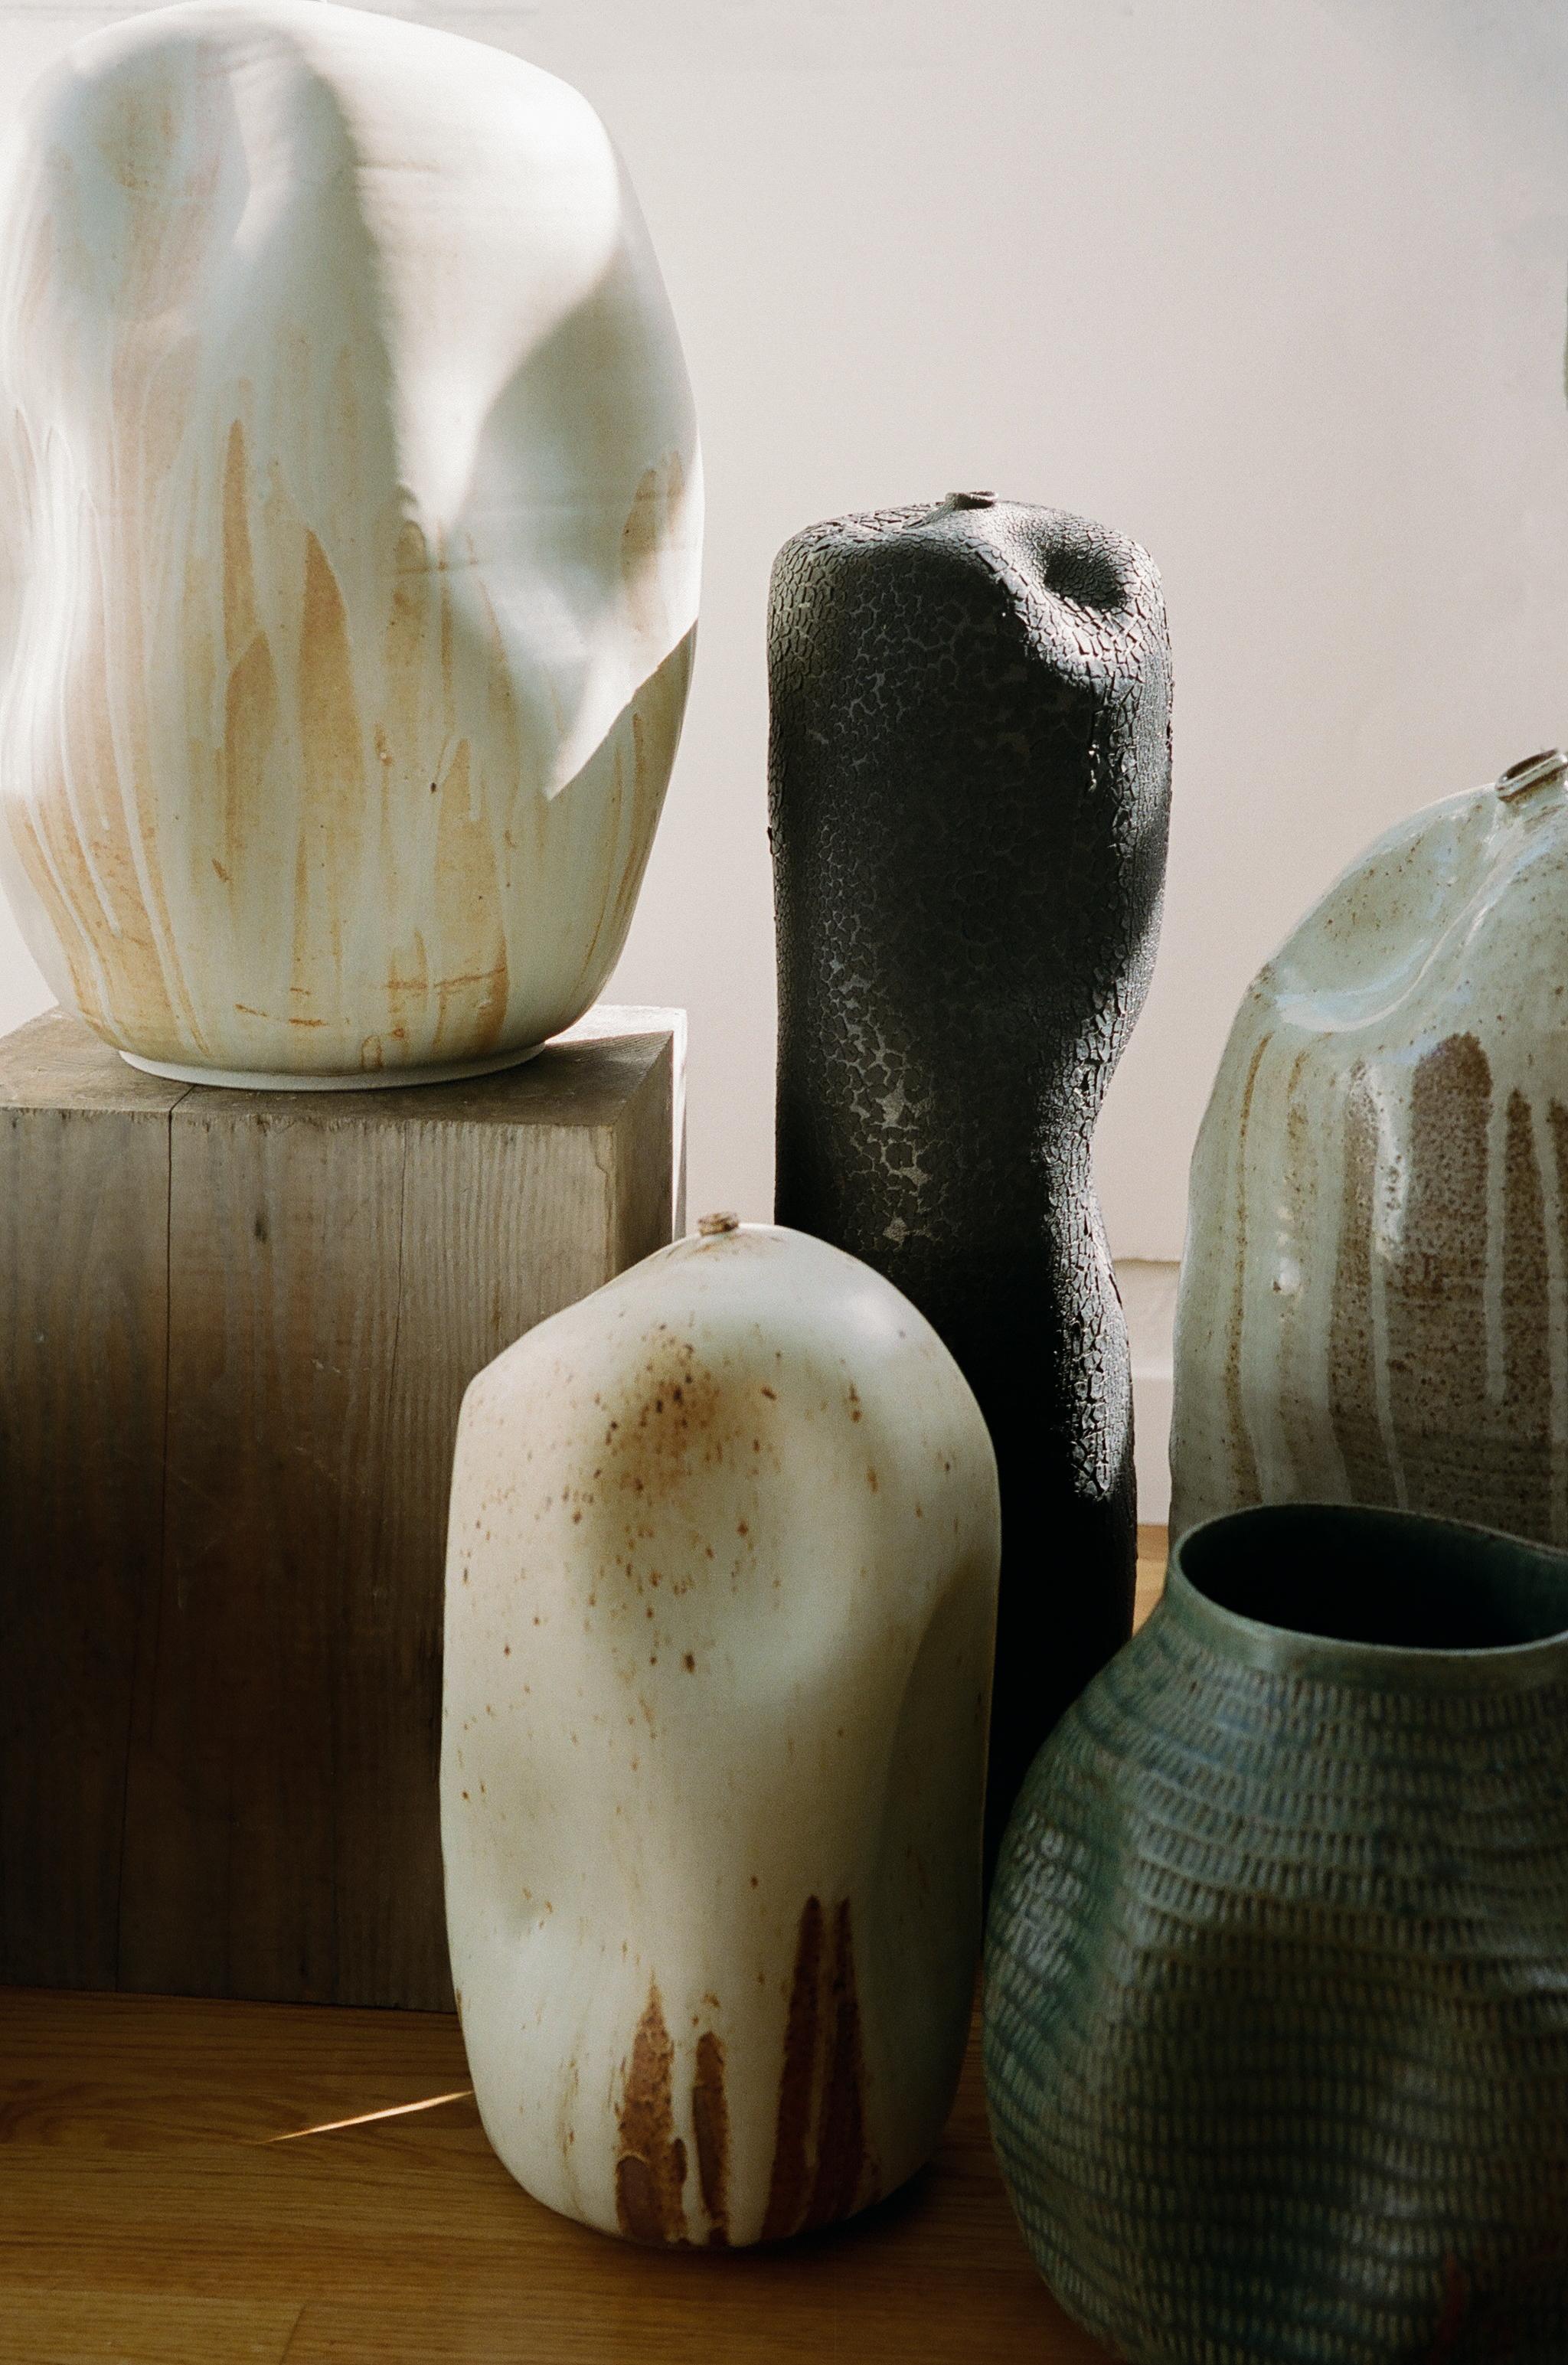 American Skoby Joe Tall Black Textured Ceramic Vase Mid-Century Modern Vessel Wabi Sabi For Sale